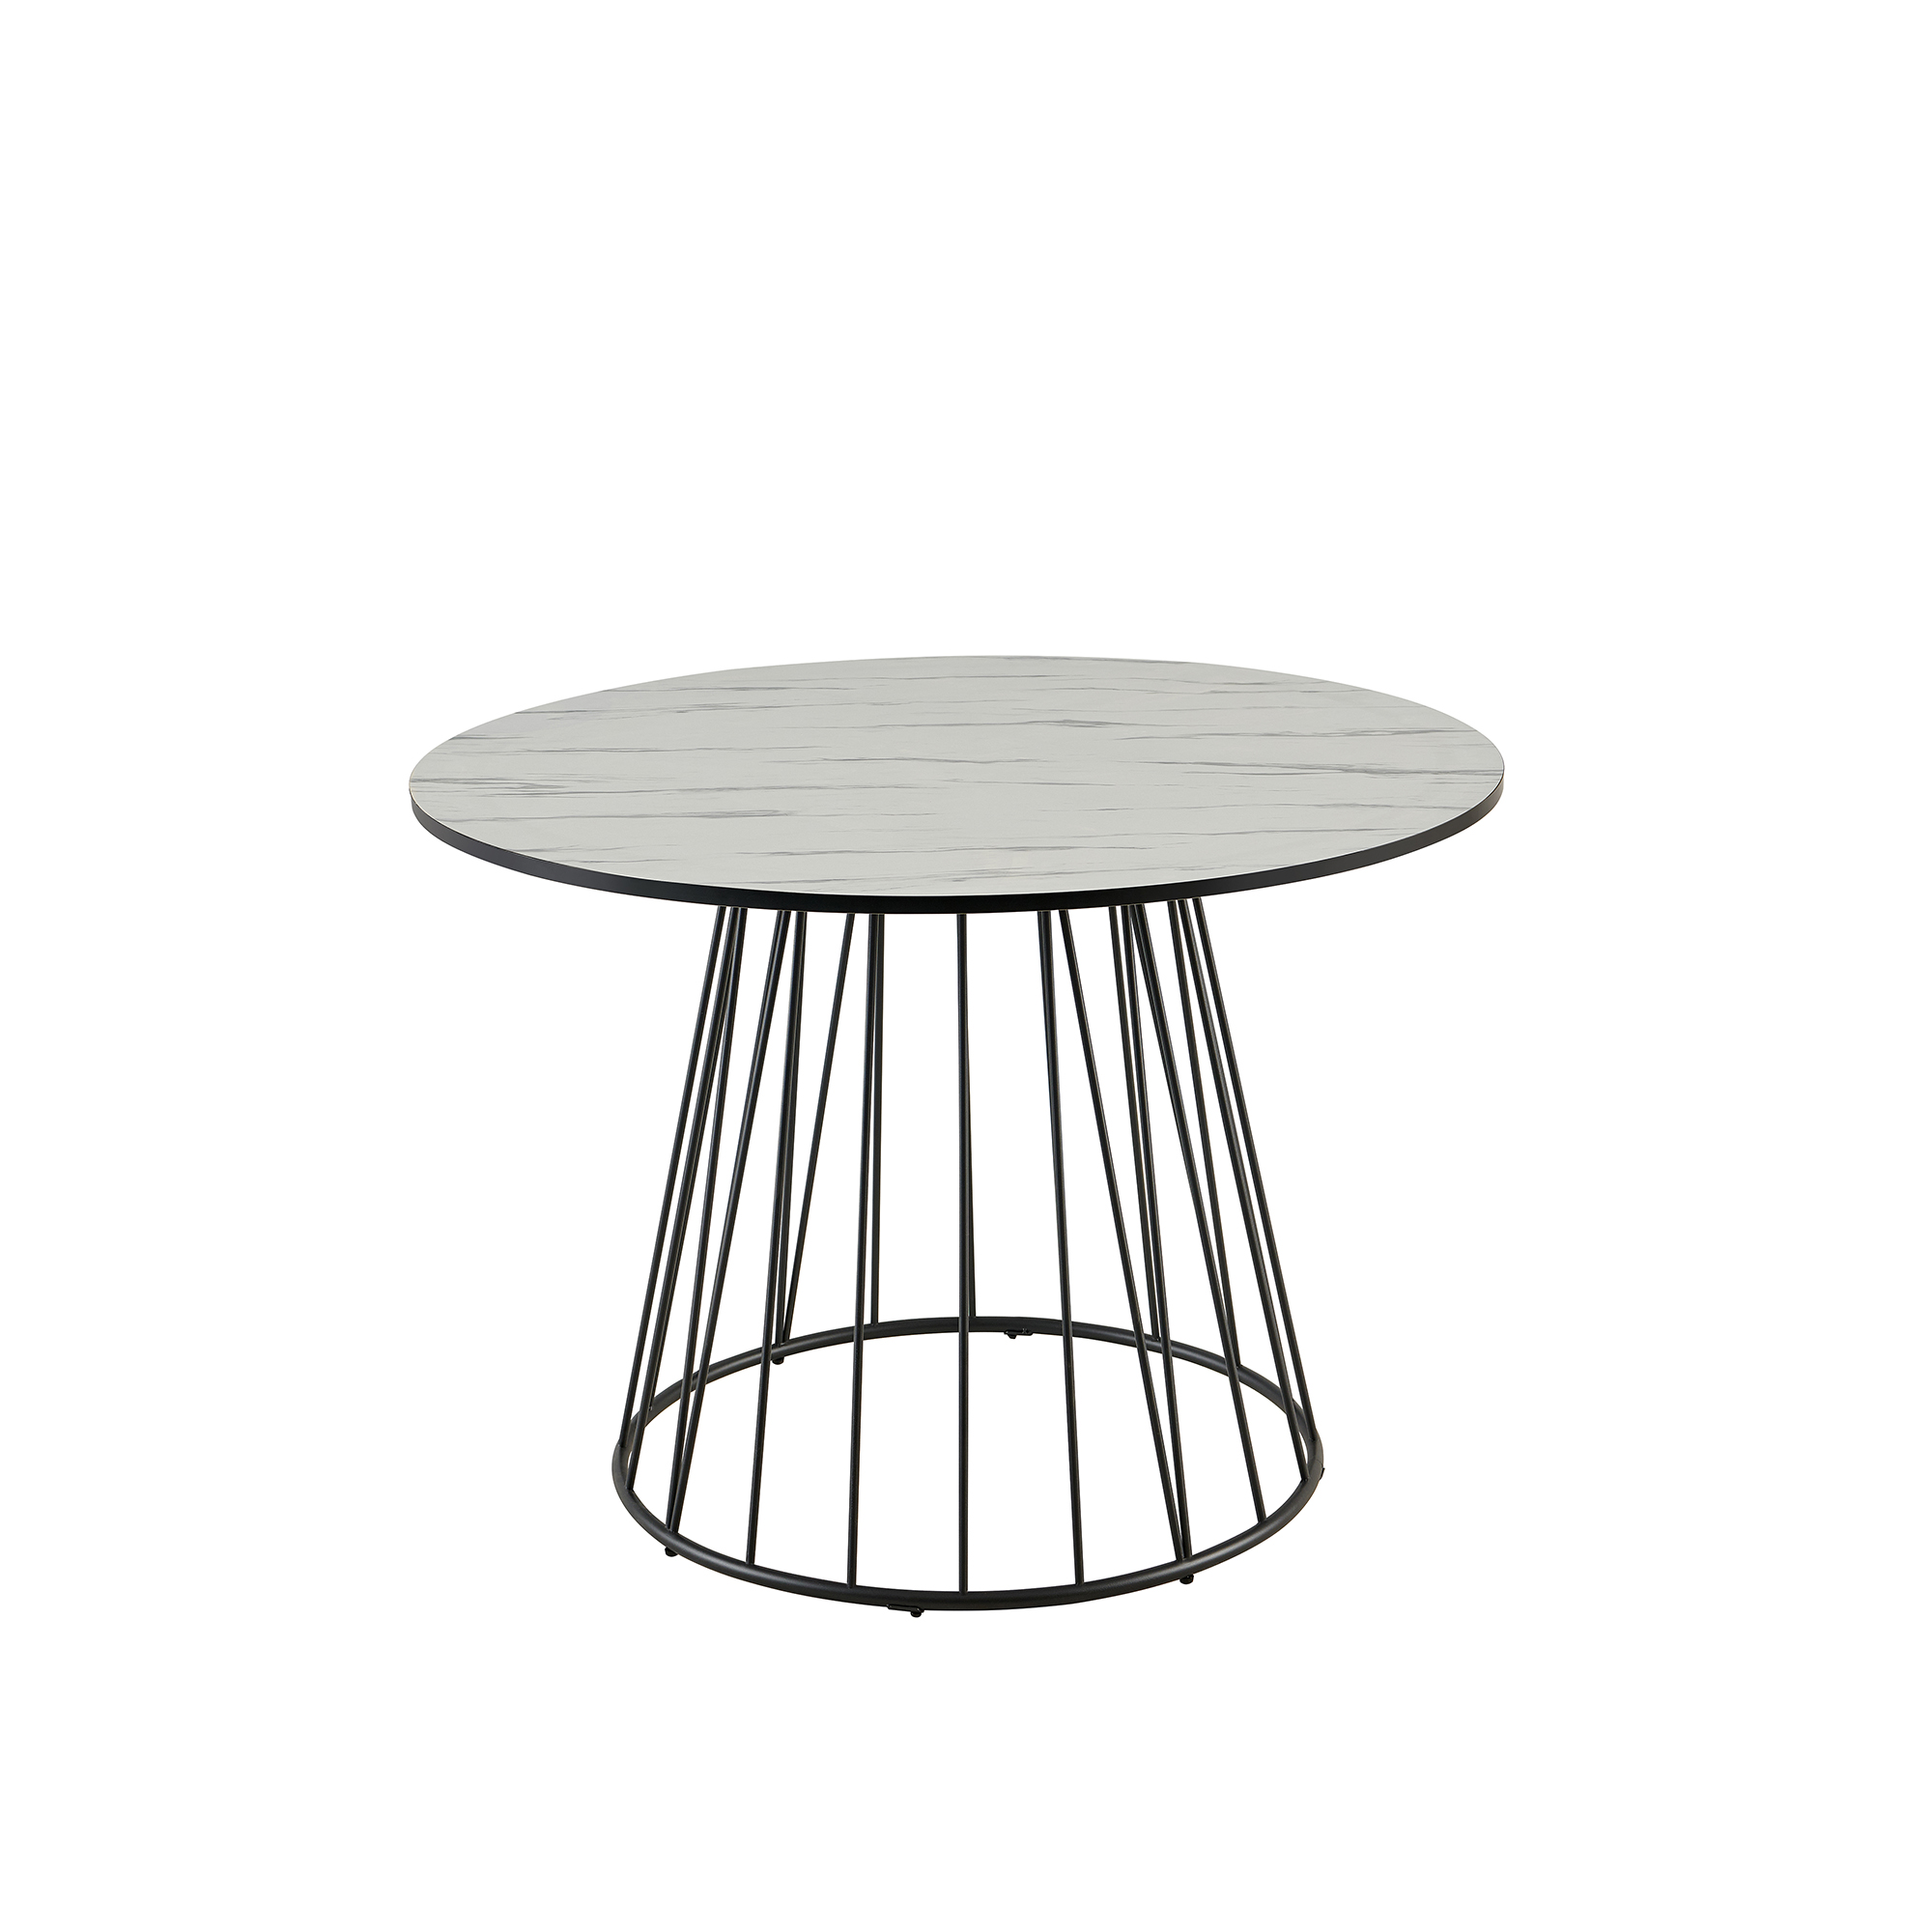 Table à manger ronde effet marbre blanc pied central design métal noir